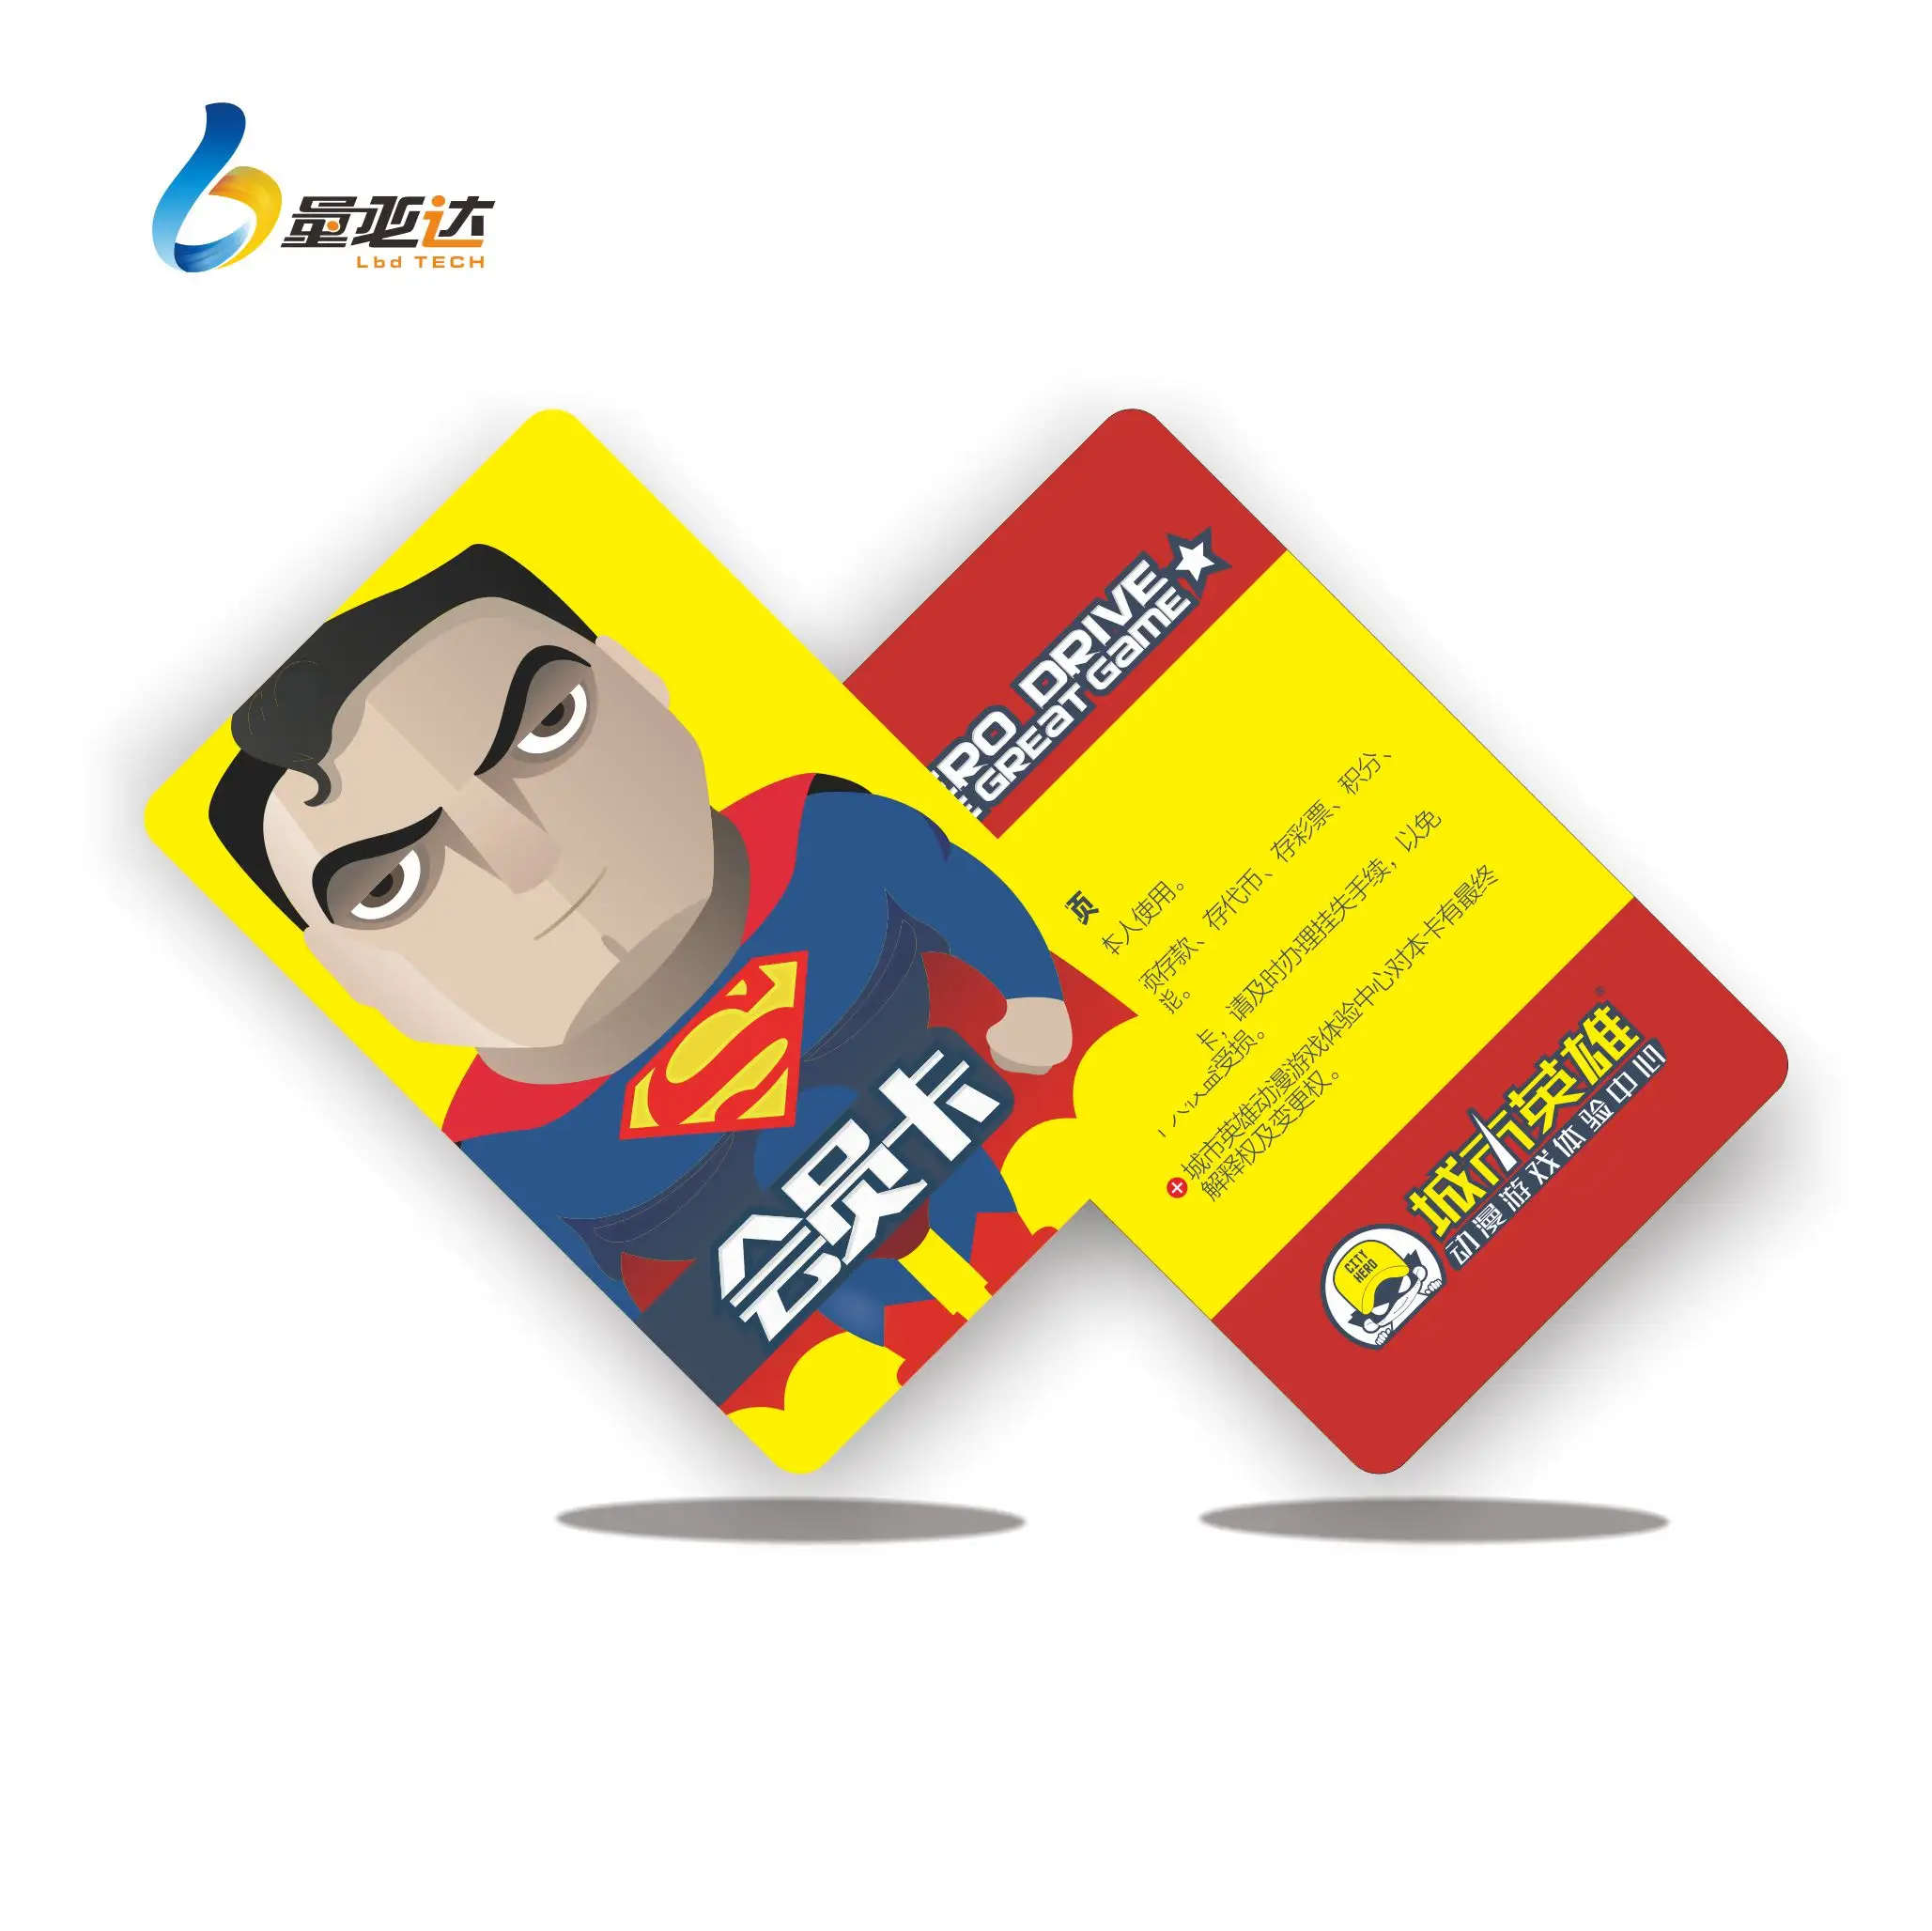 प्रिंट करने योग्य पीवीसी प्लास्टिक स्मार्ट कार्ड आईडी के साथ स्कूल के लिए